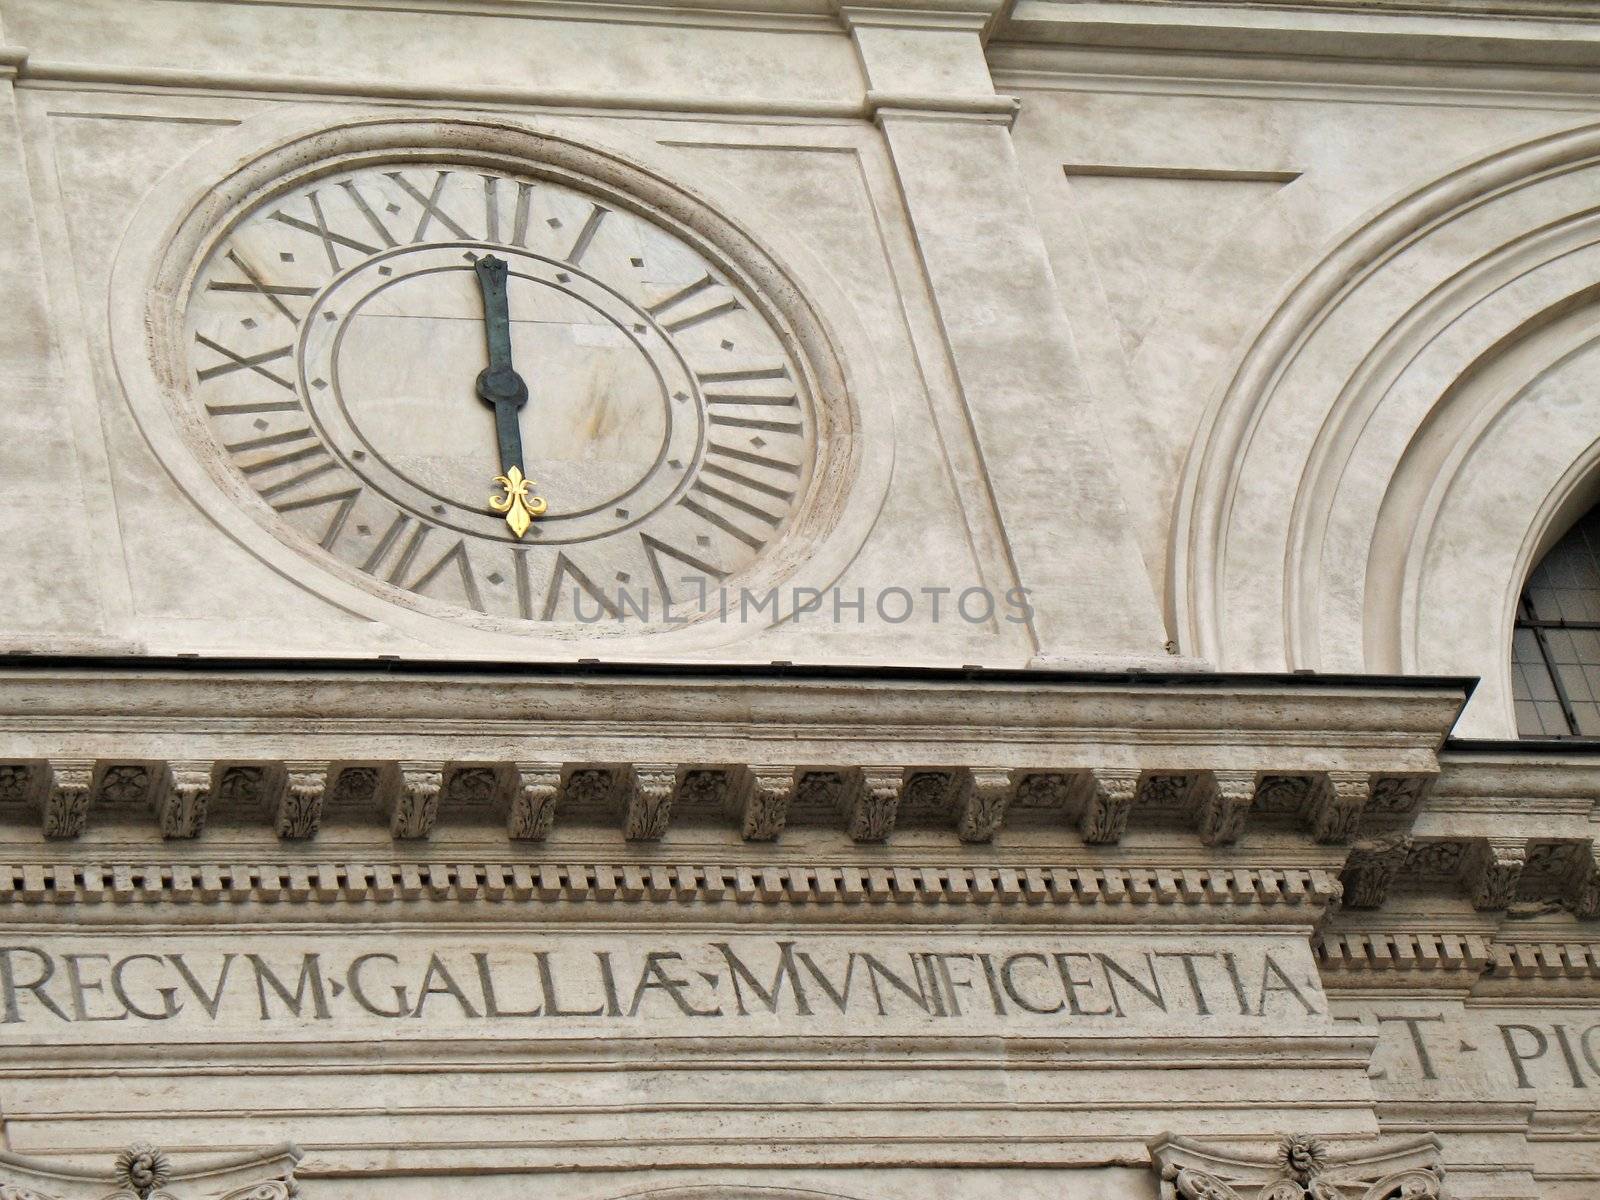 Trinita' dei Monti, famous church in Rome. Scenographic dominance above the Spanish Steps that descend into the Piazza di Spagna